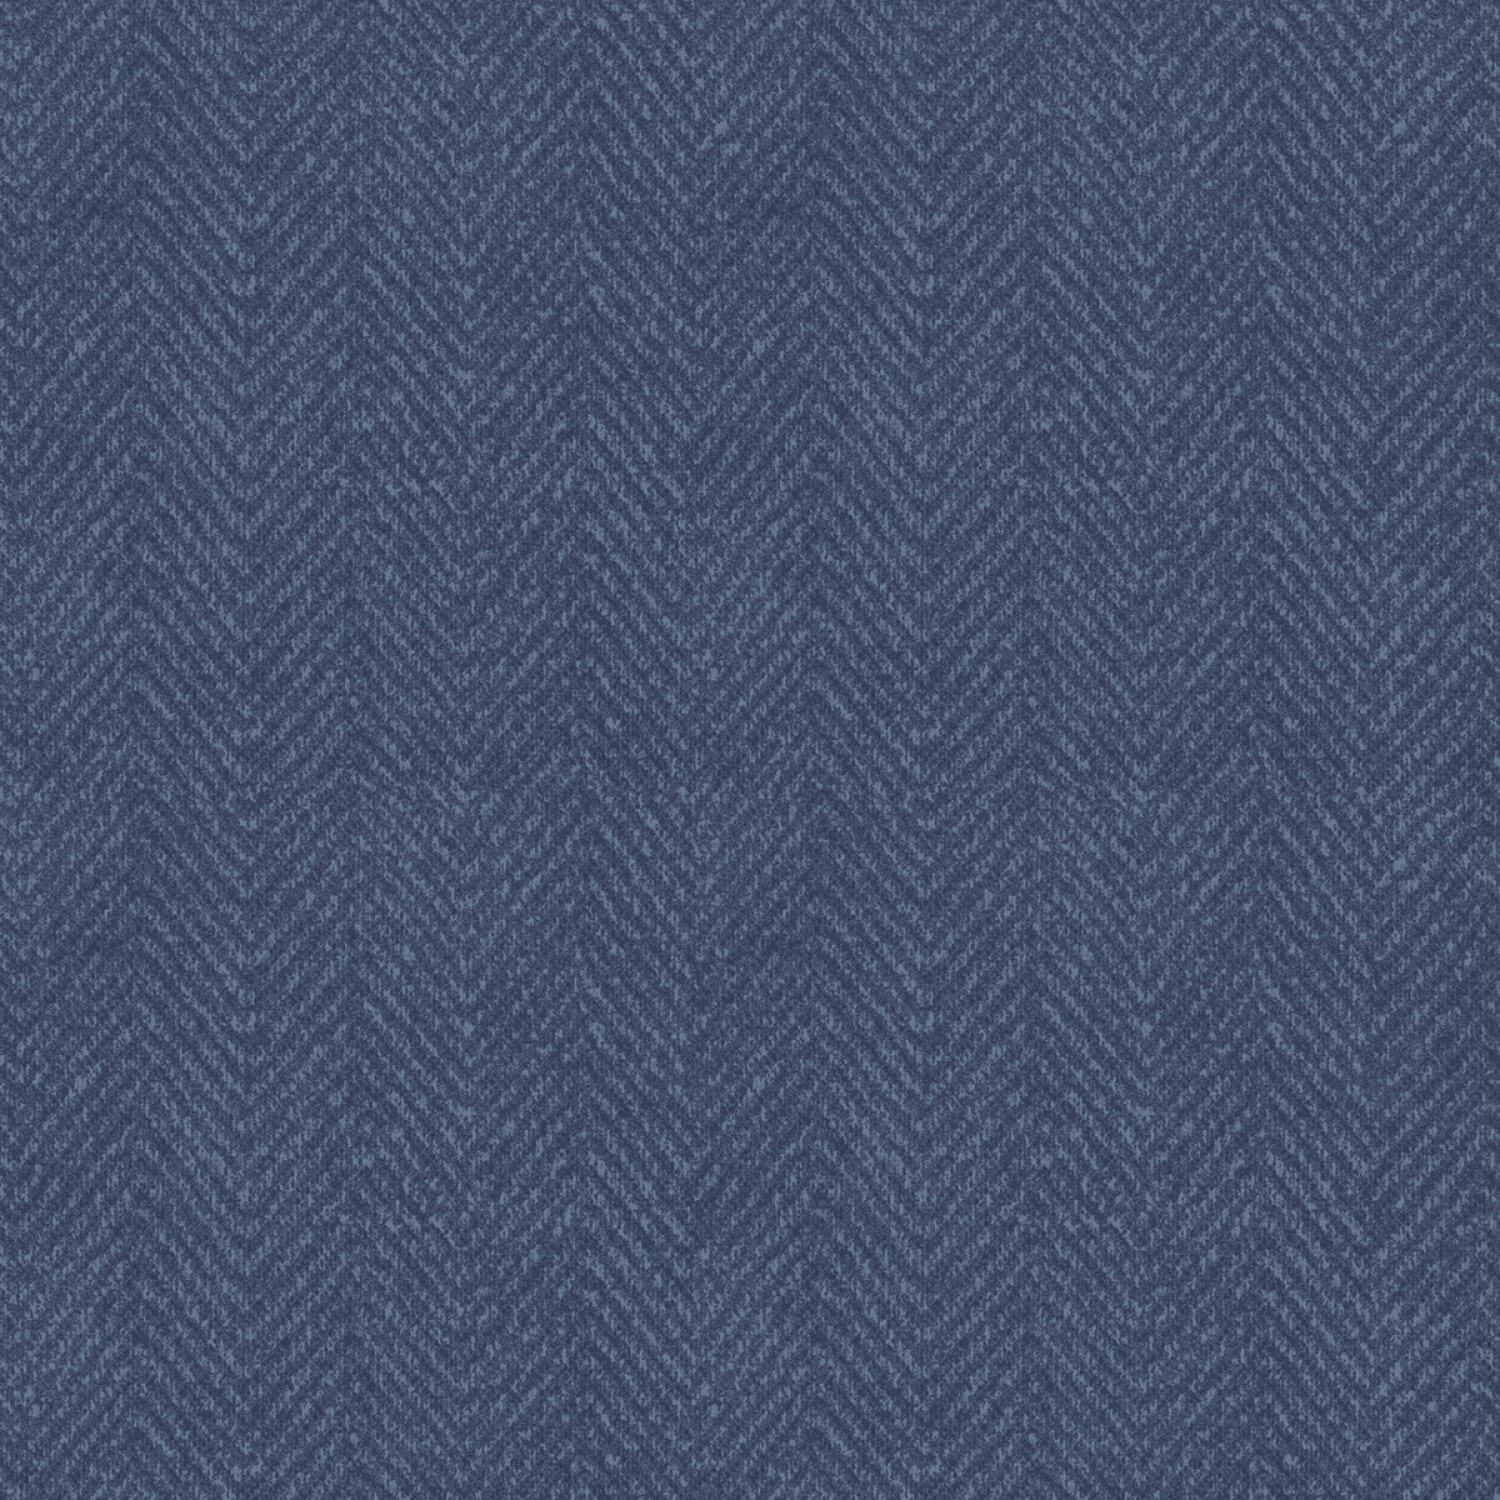 Woolies Flannel - Blue Herringbone - 1/2m cut 58472